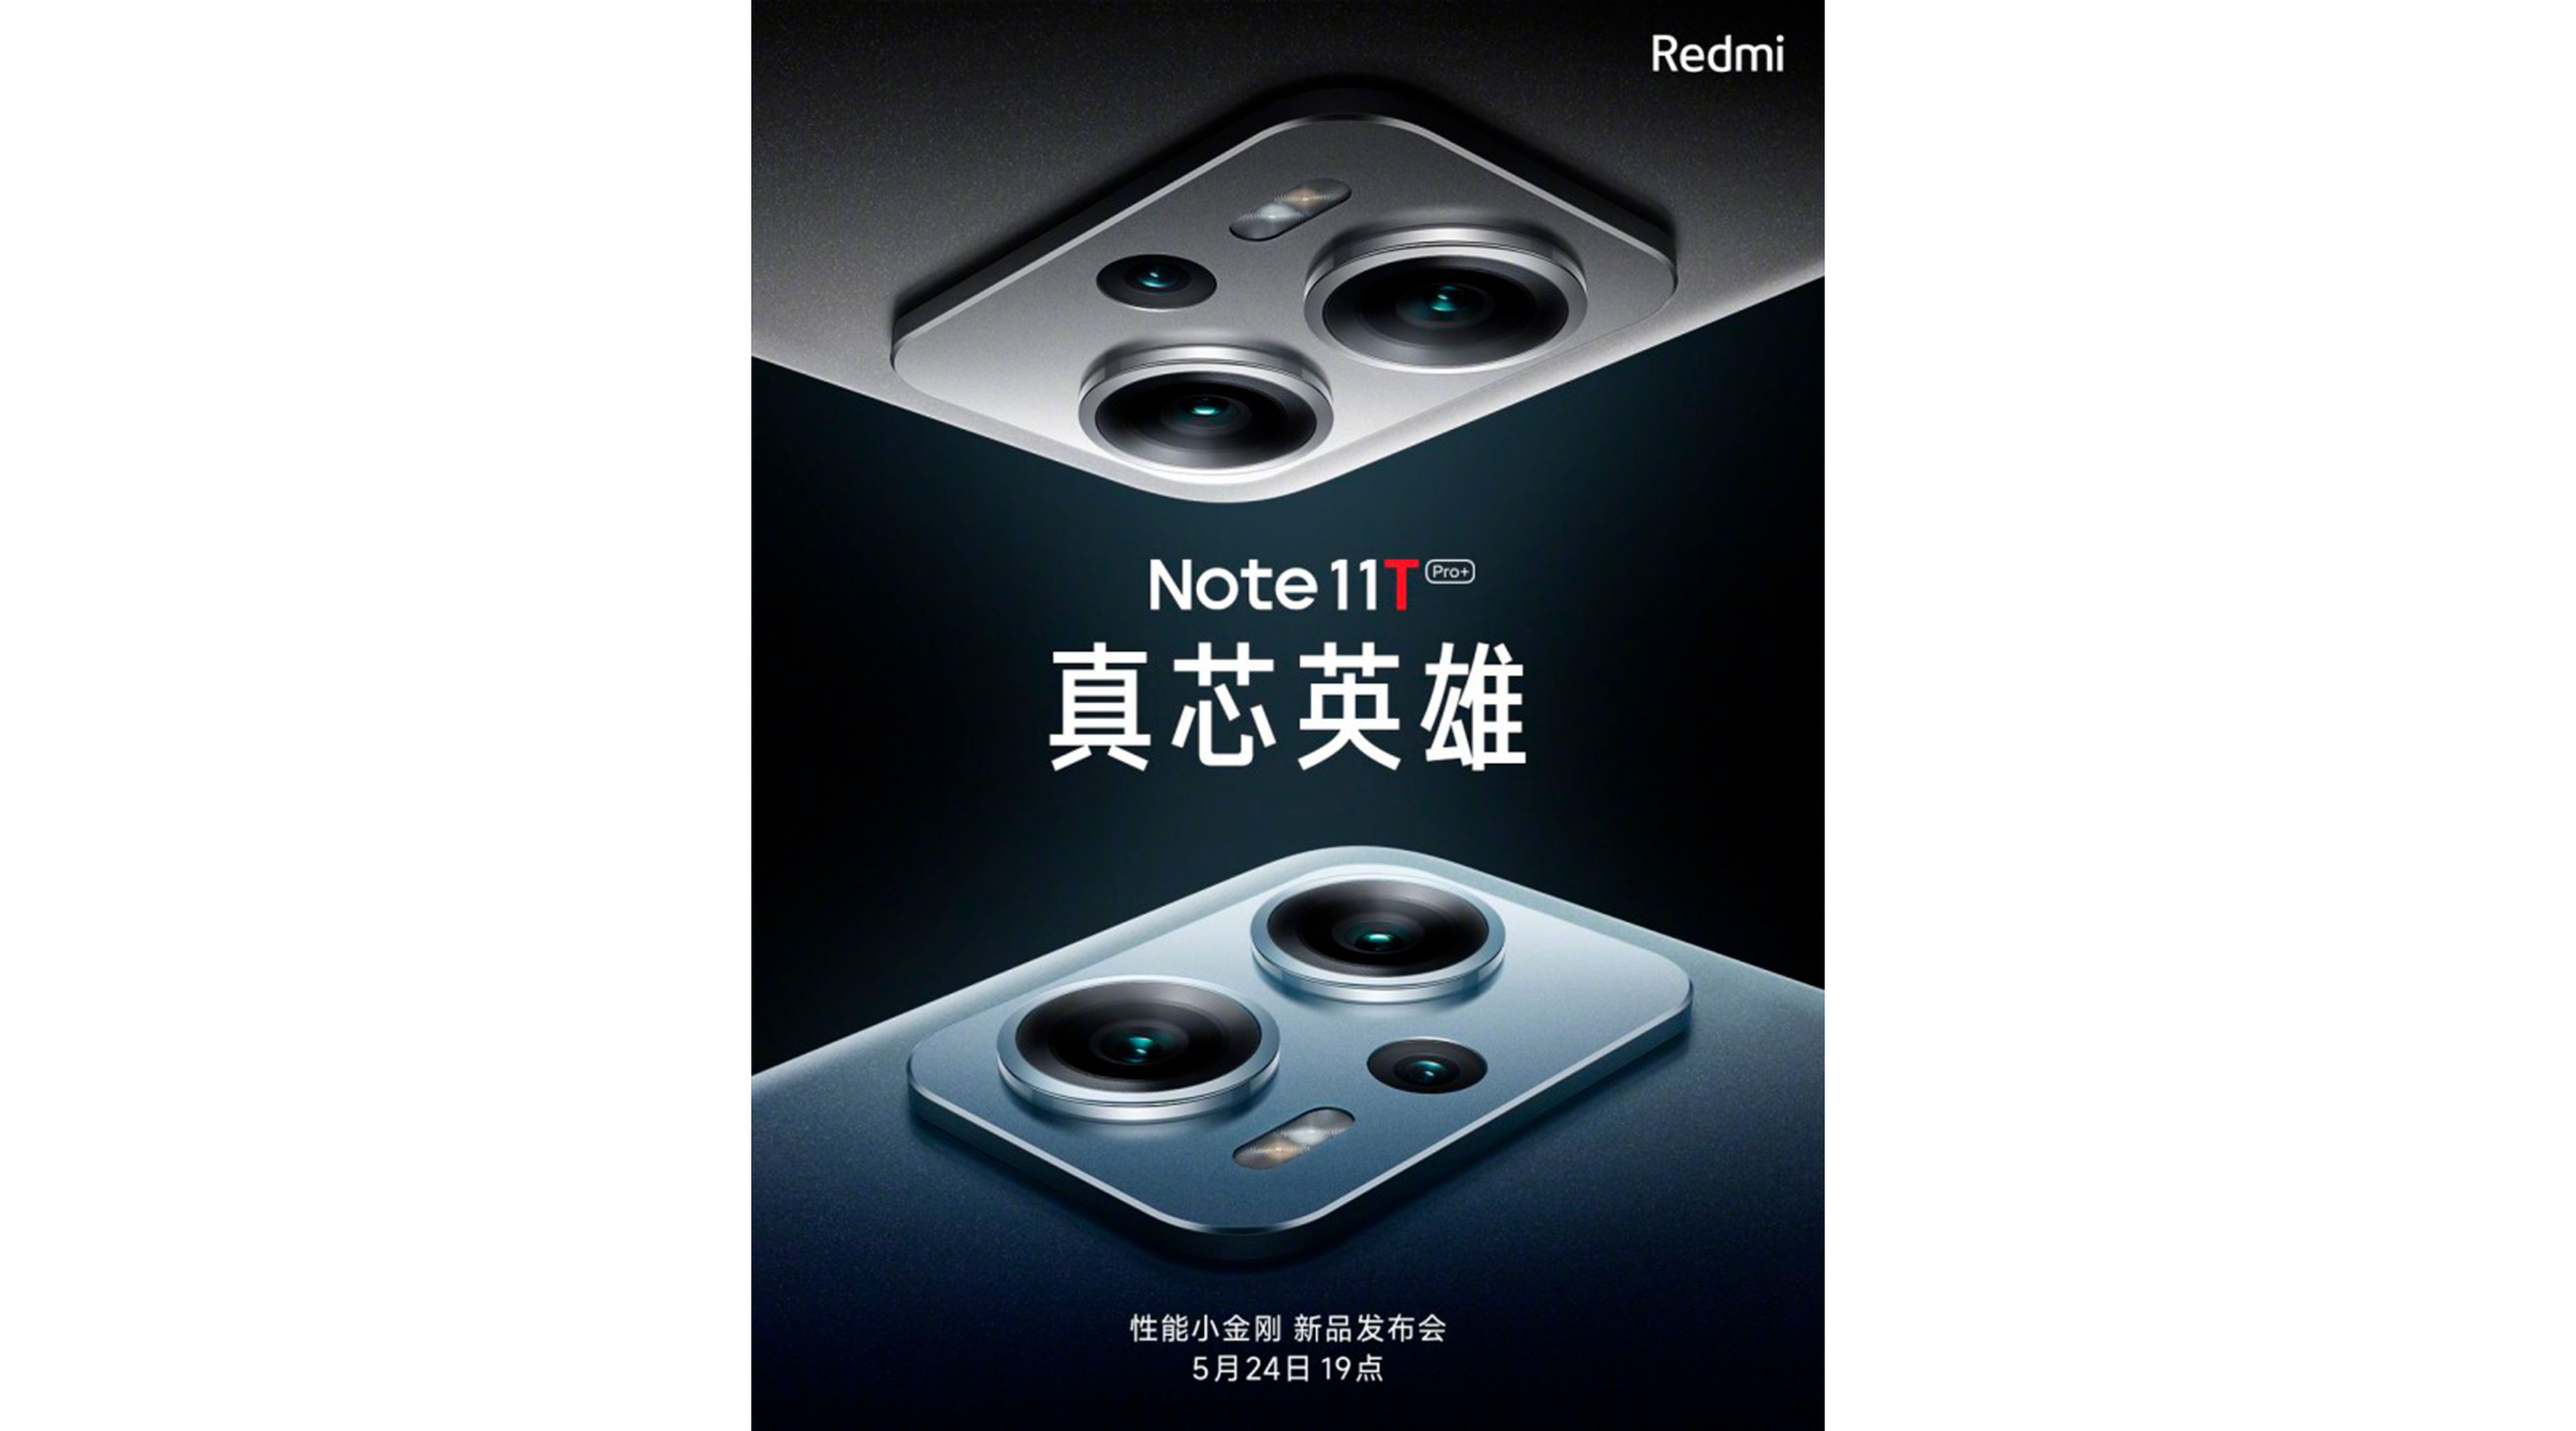 Redmi Note 11T Pro+